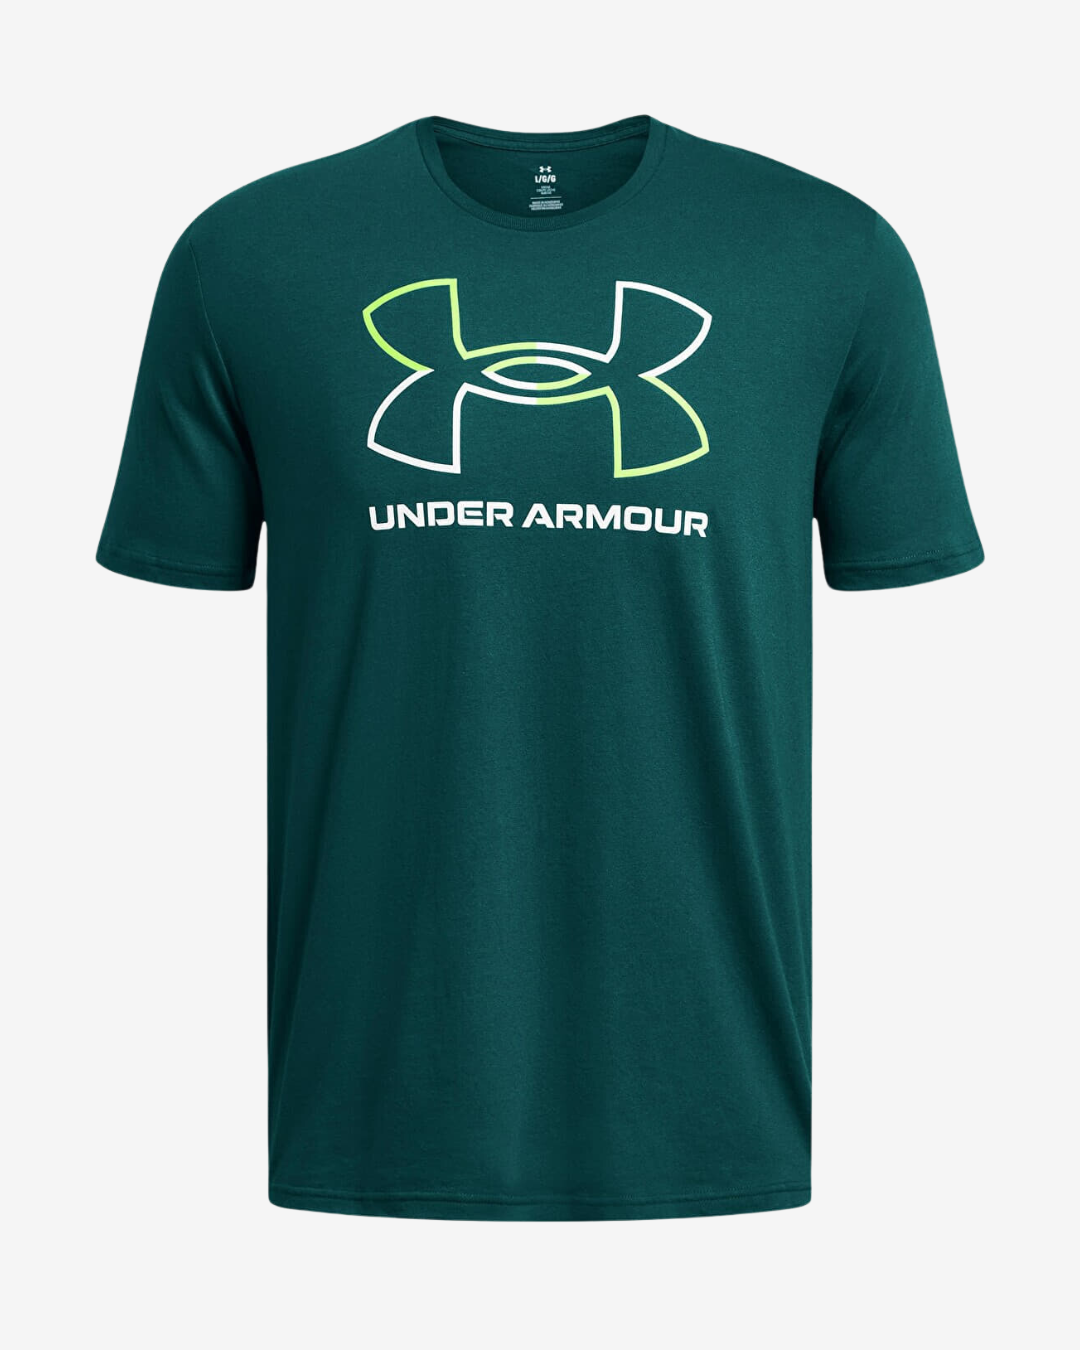 Billede af Under Armour GL Foundation update t-shirt - Turkis - Str. 3XL - Modish.dk